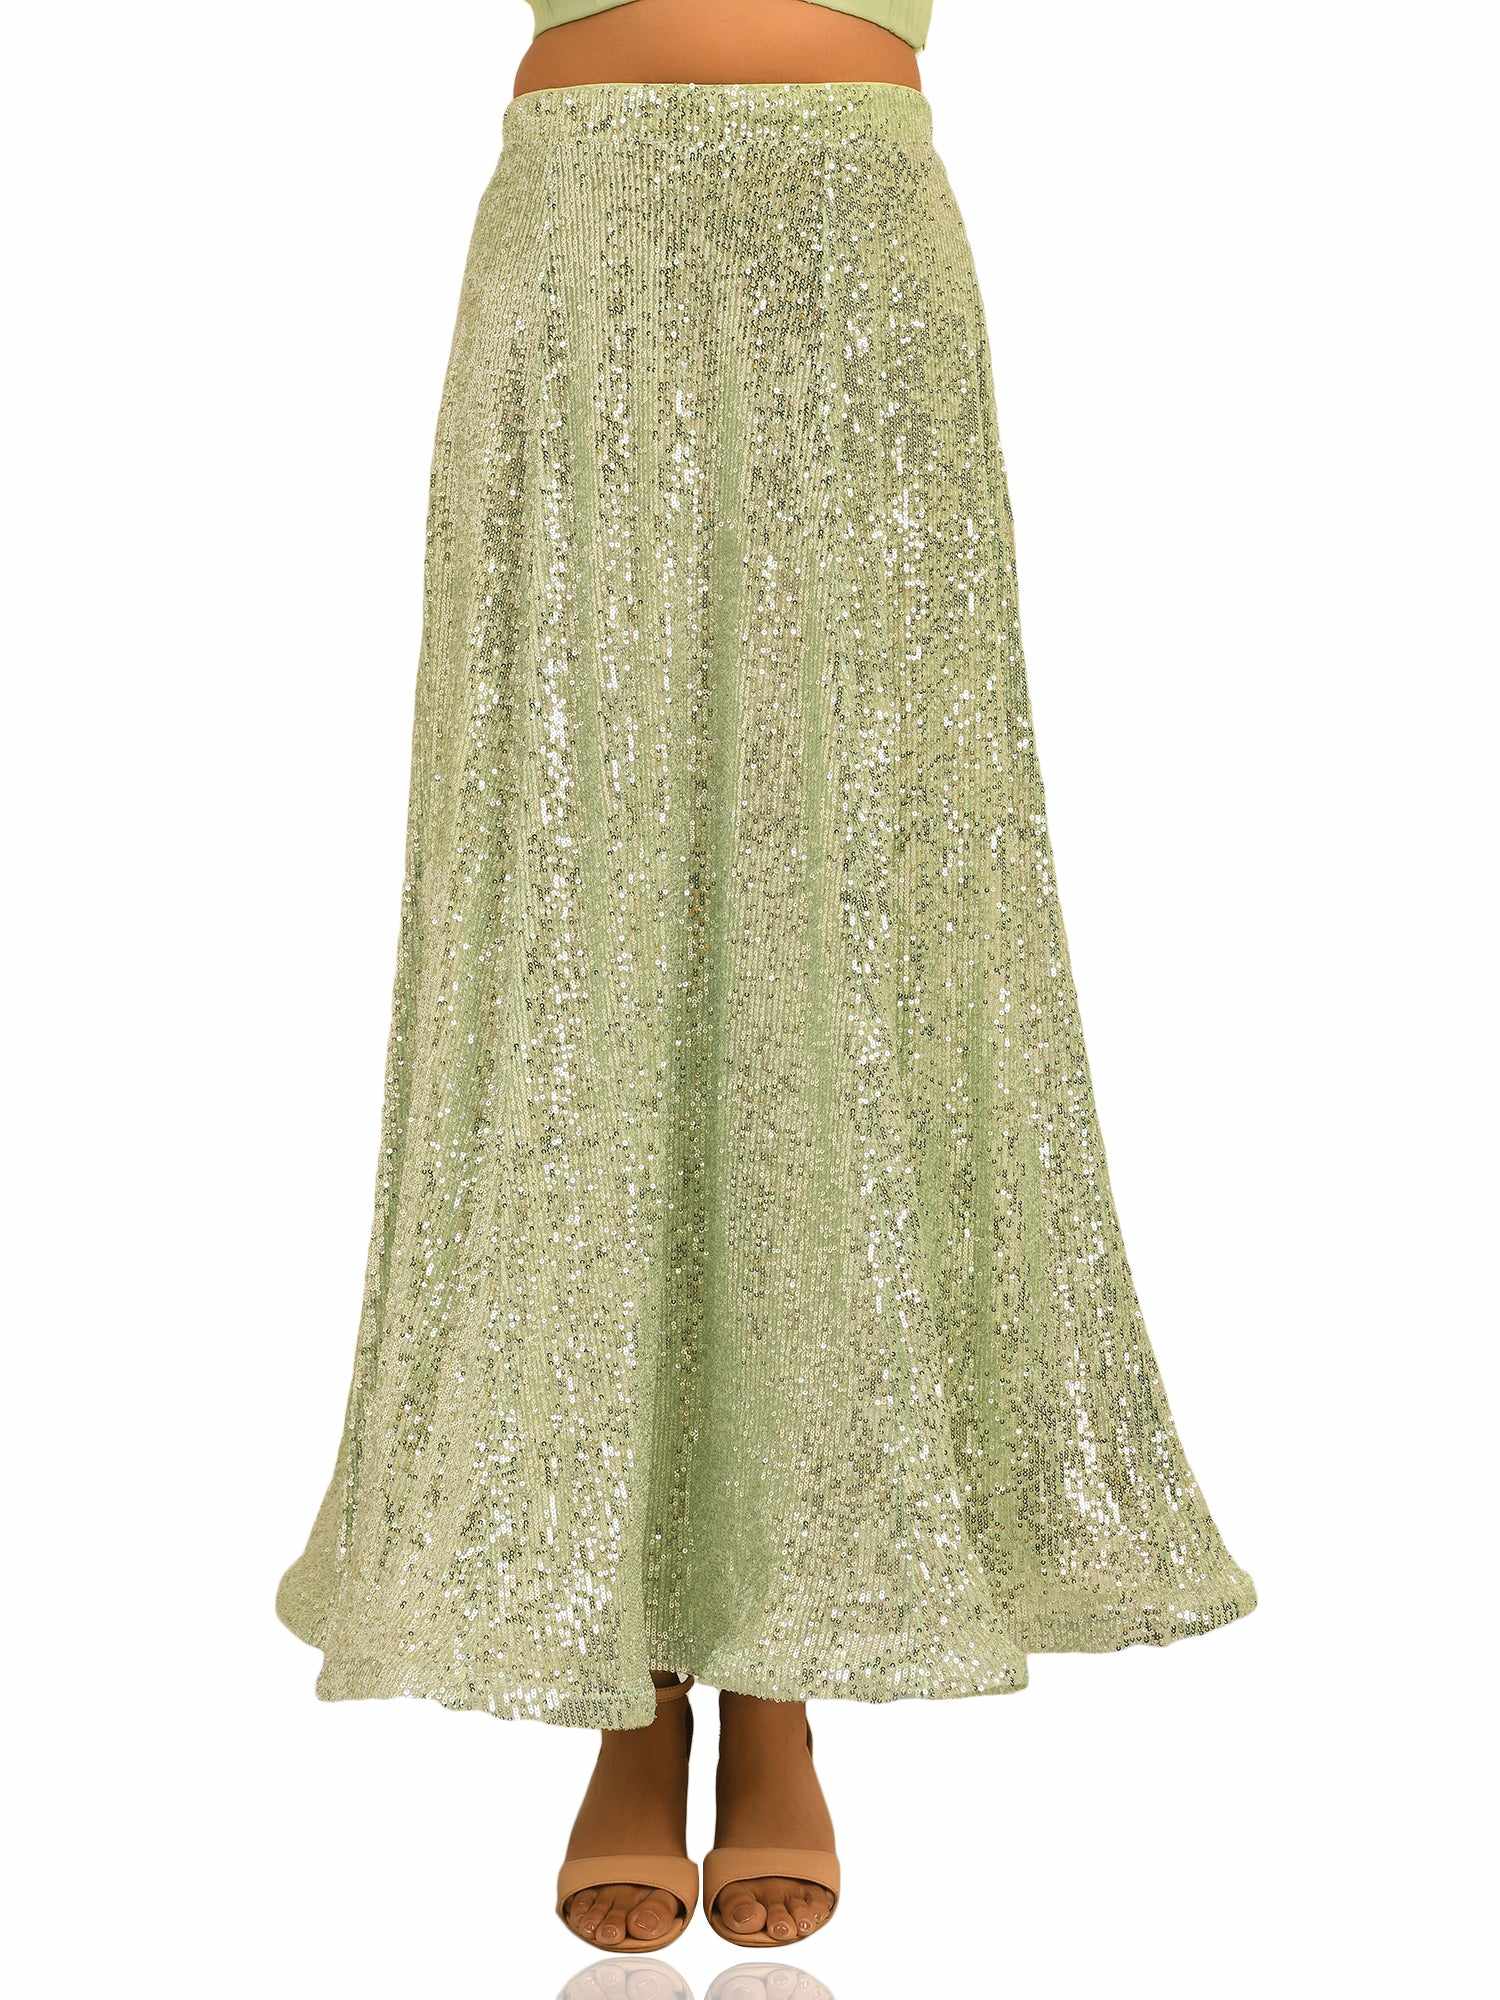 sequined tulle floor length light green skirt